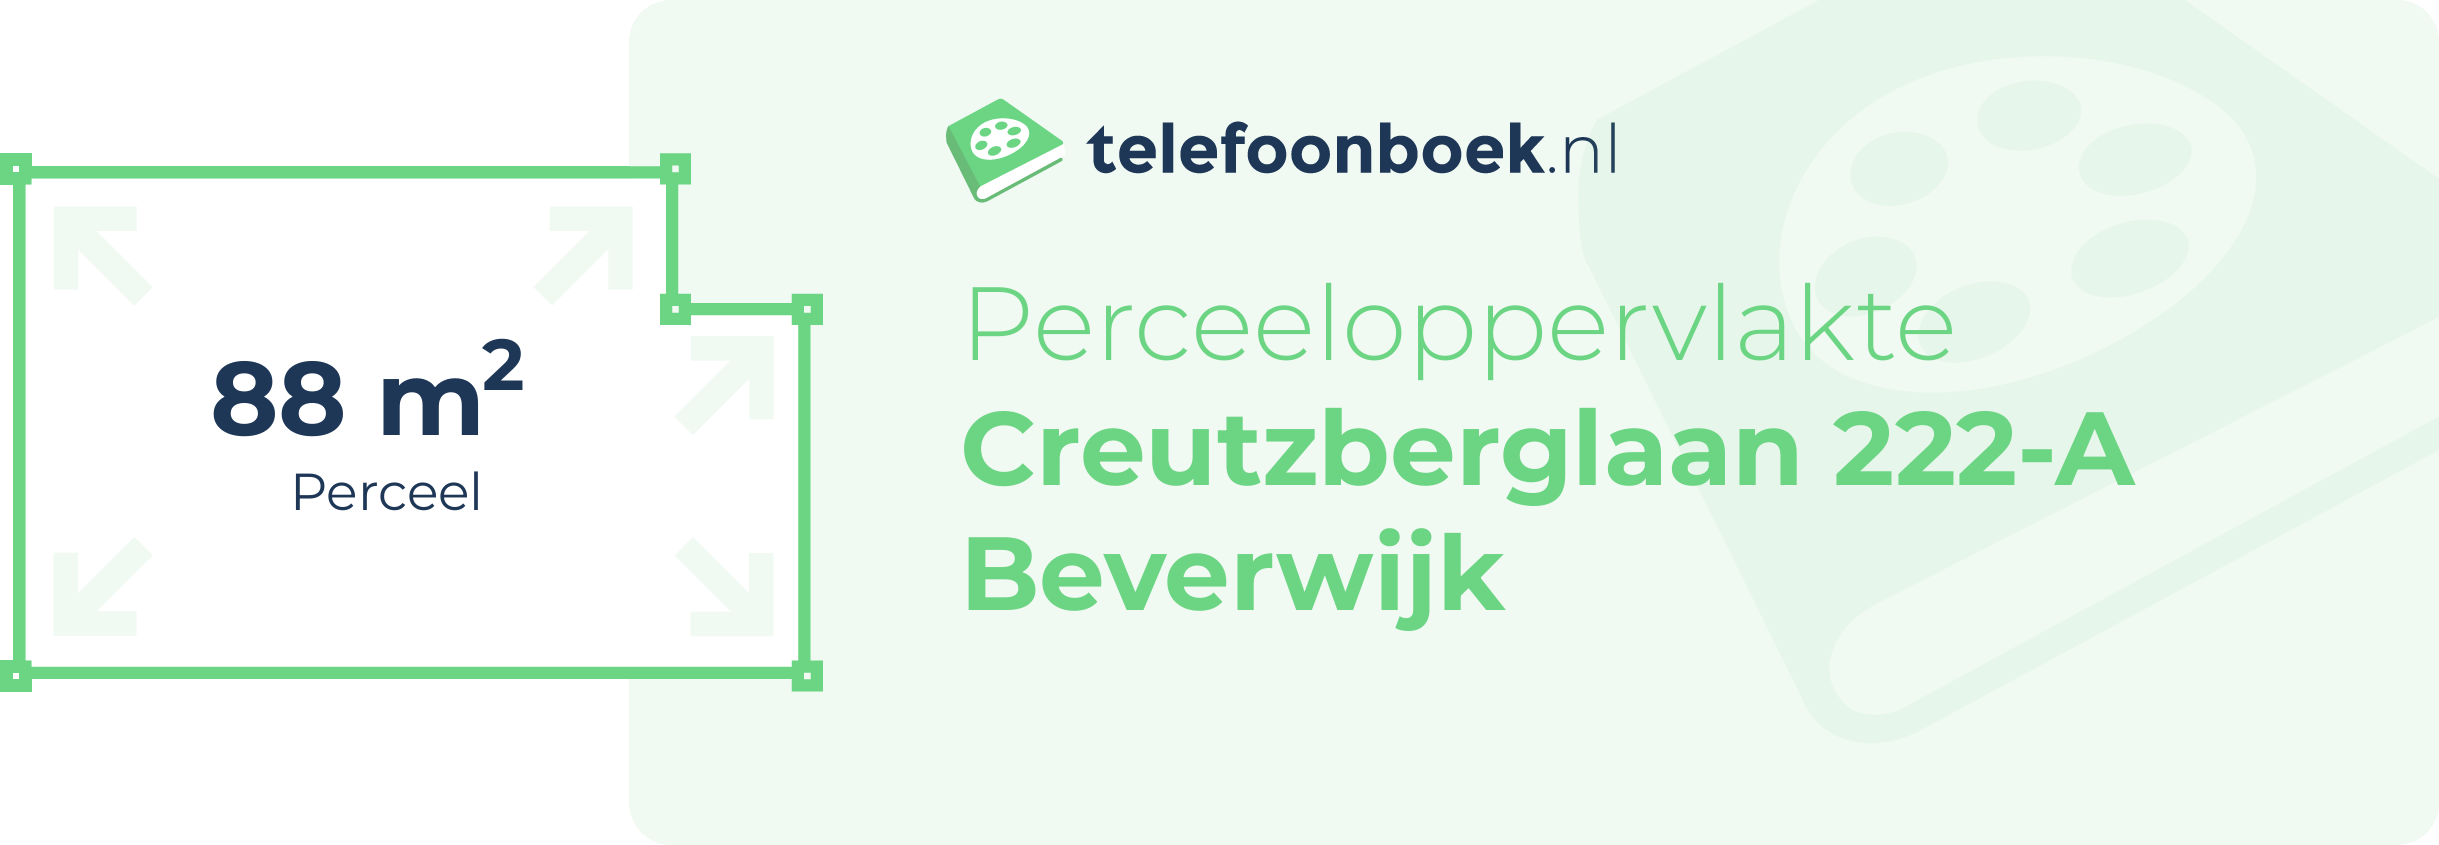 Perceeloppervlakte Creutzberglaan 222-A Beverwijk